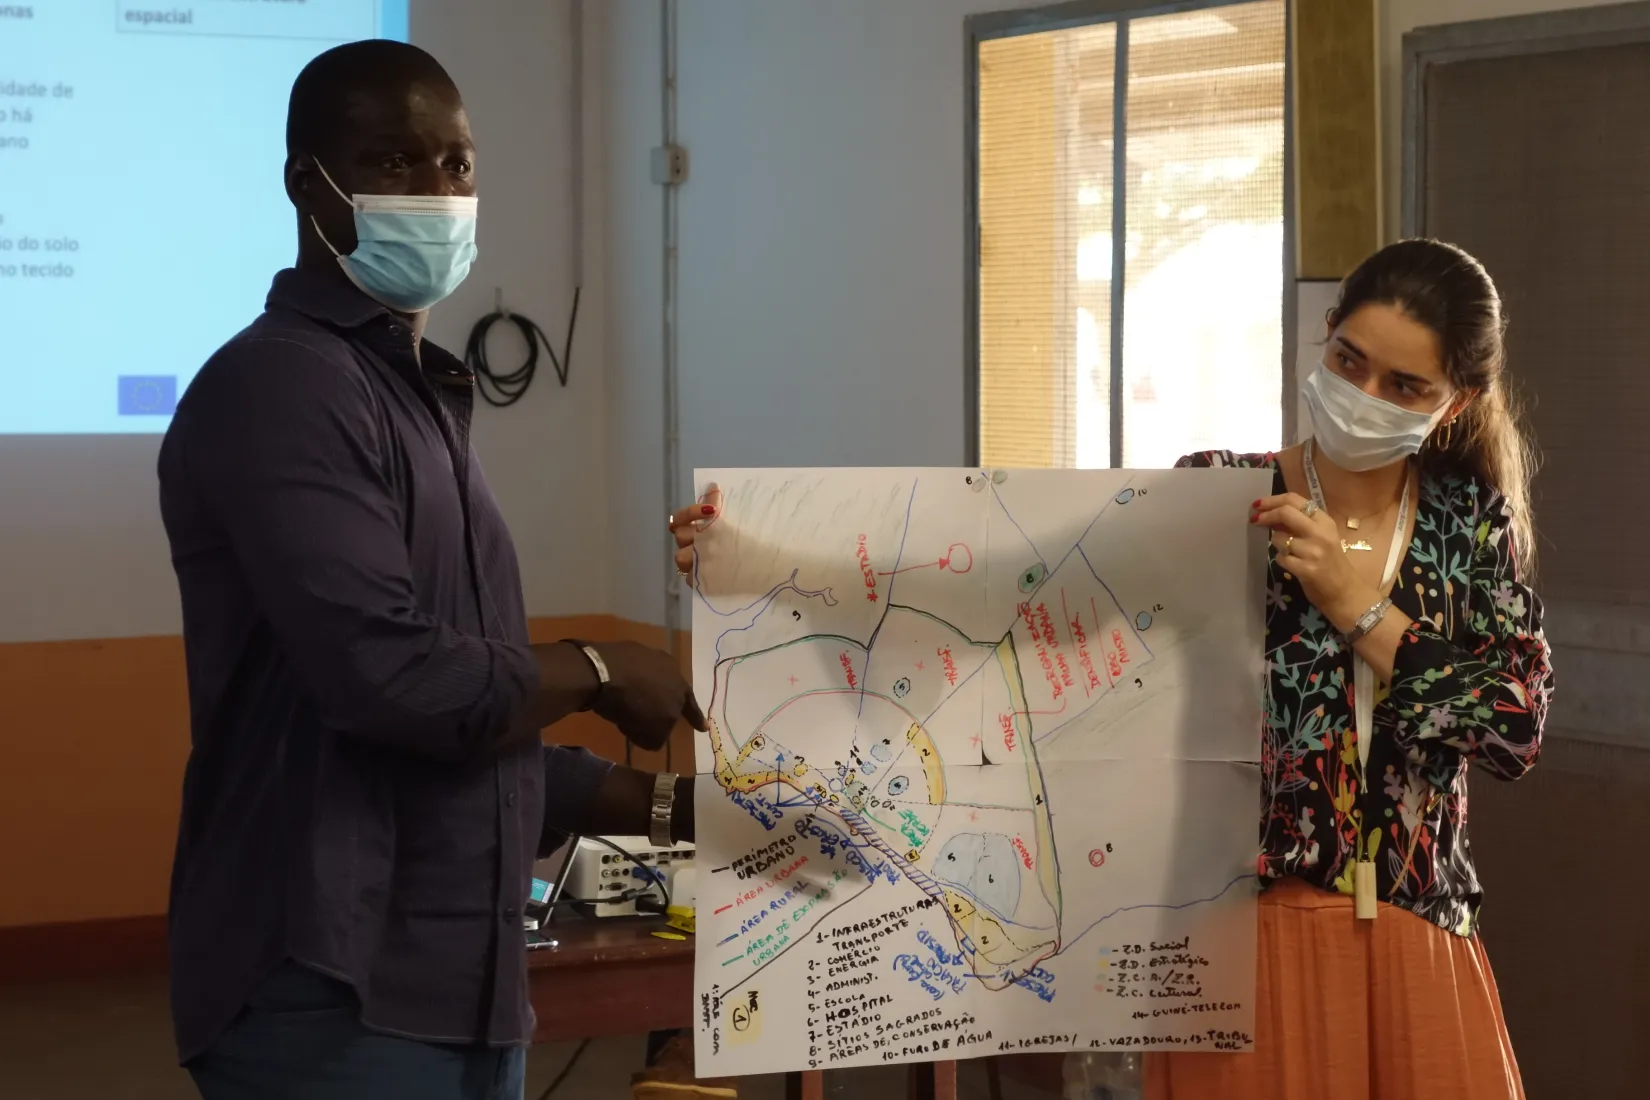 Cartografía participativa en Bubaque, Guinea Bissau, ONU-Habitat